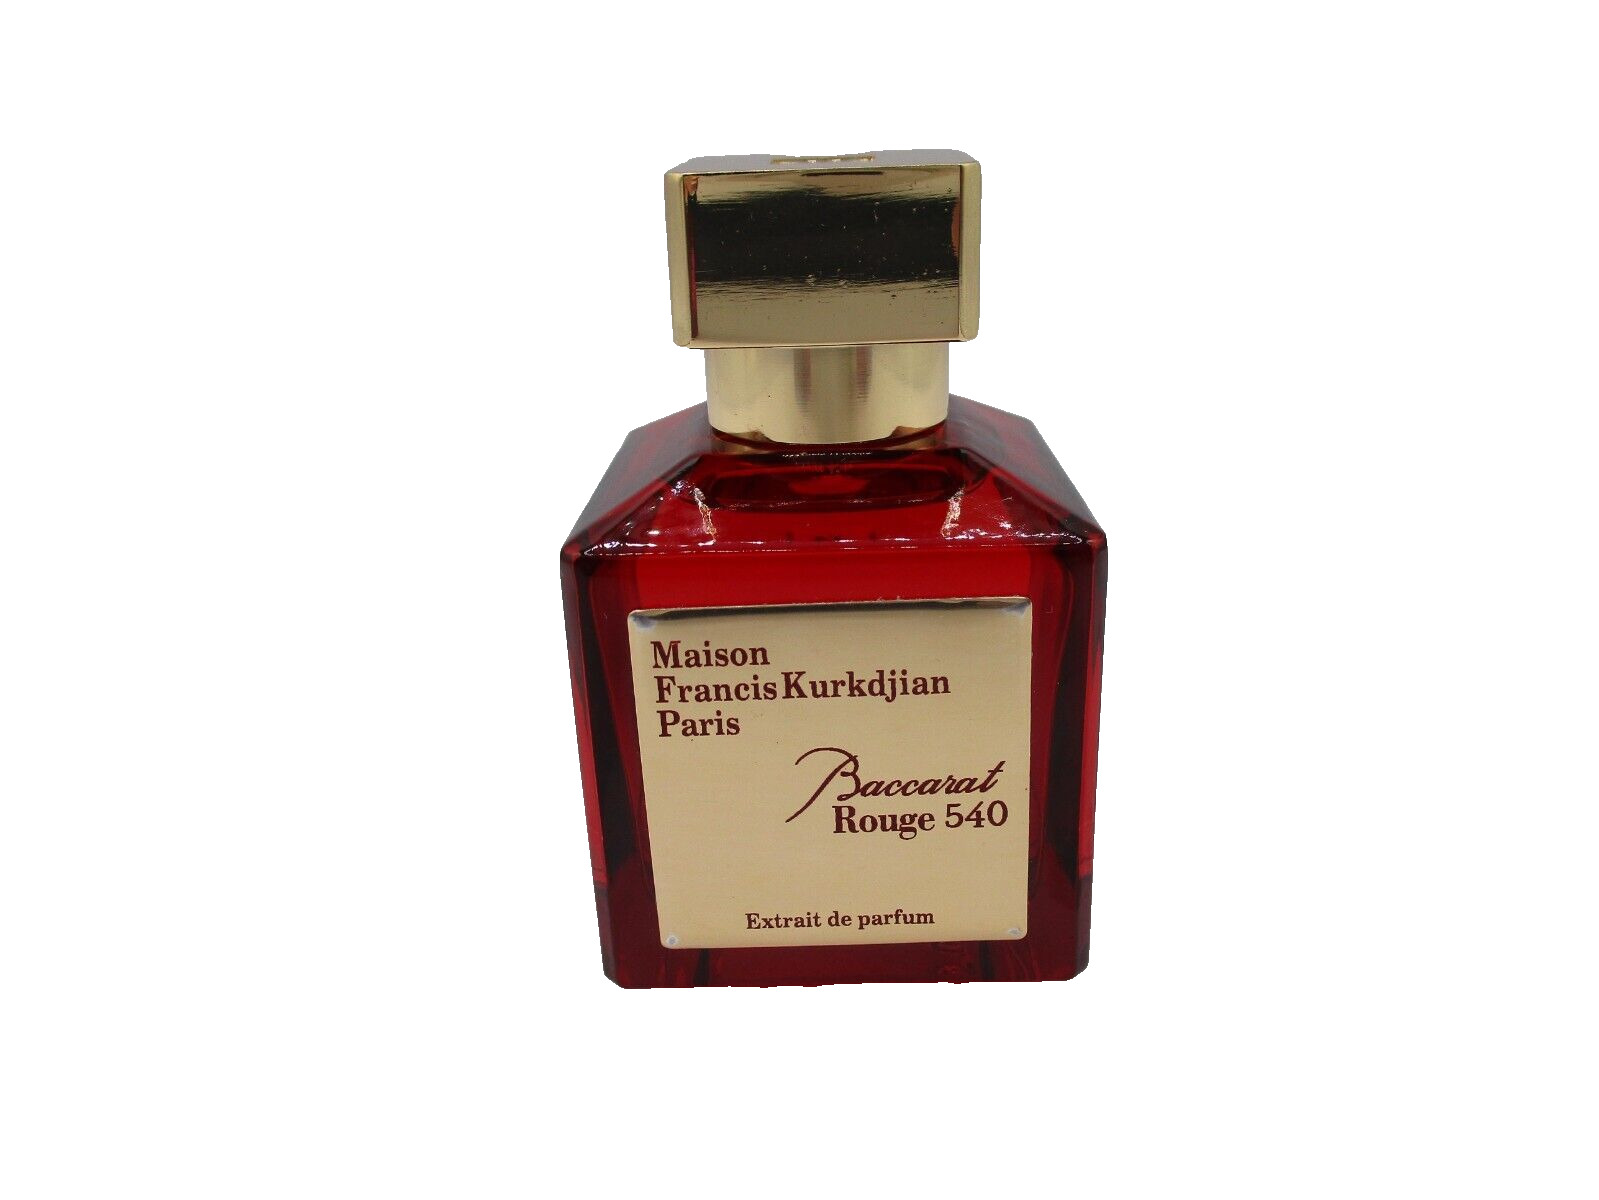 Maison Francis Kurkdjian Baccarat Rouge 540 Extrait De Parfum ~ 2.4 oz